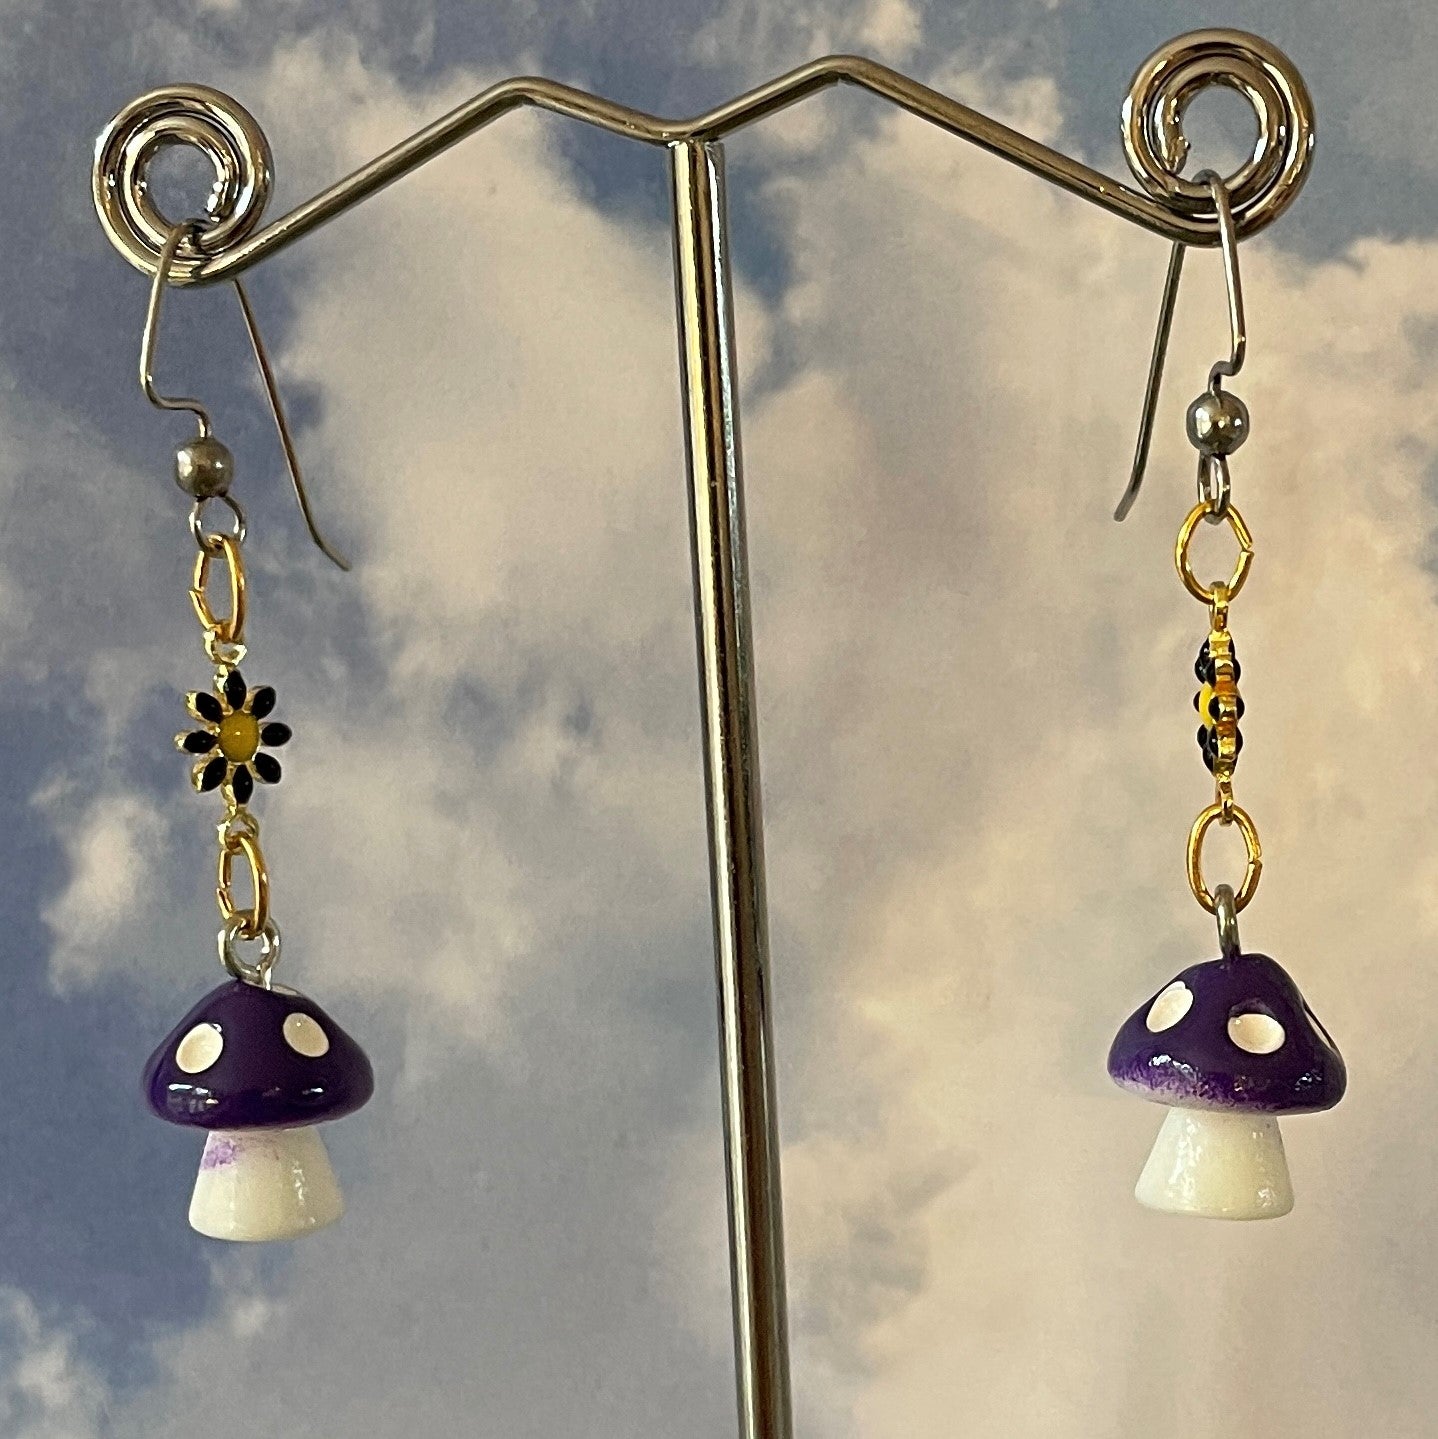 Handmade Purple Mushroom Earrings by Brenda Gadow Clark